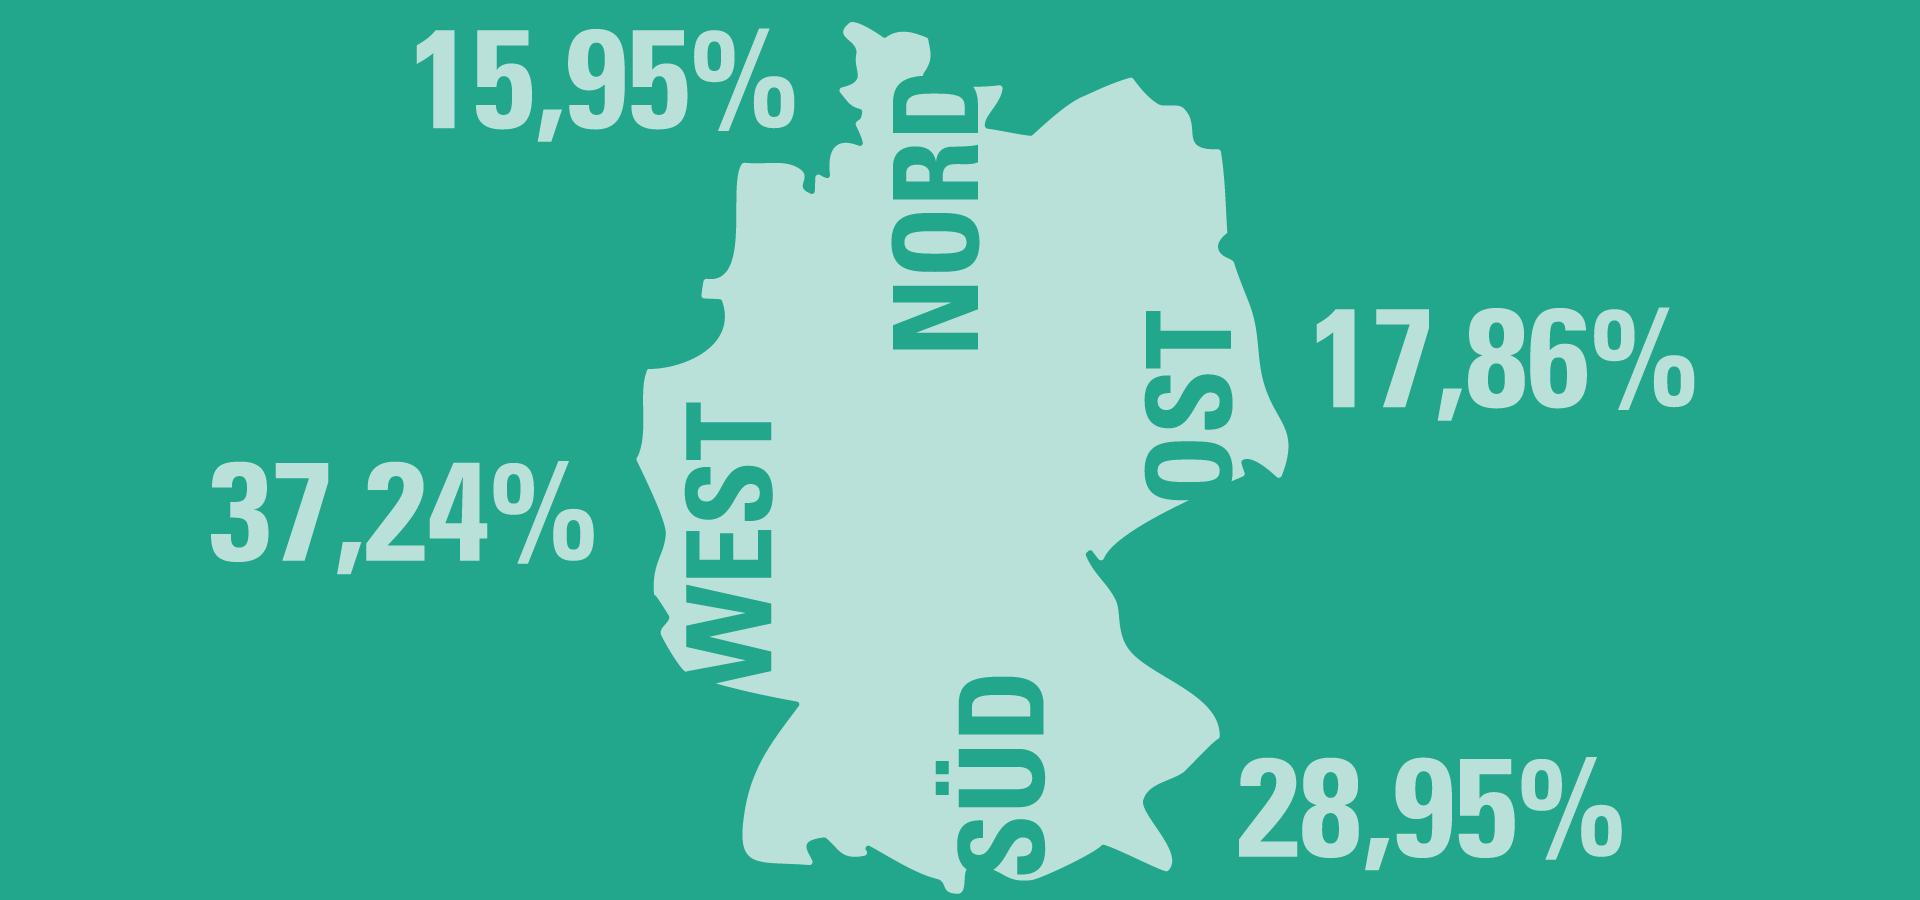 Verteilung Standort: 17,86% Ost, 37,24% West, 15,95% Nord